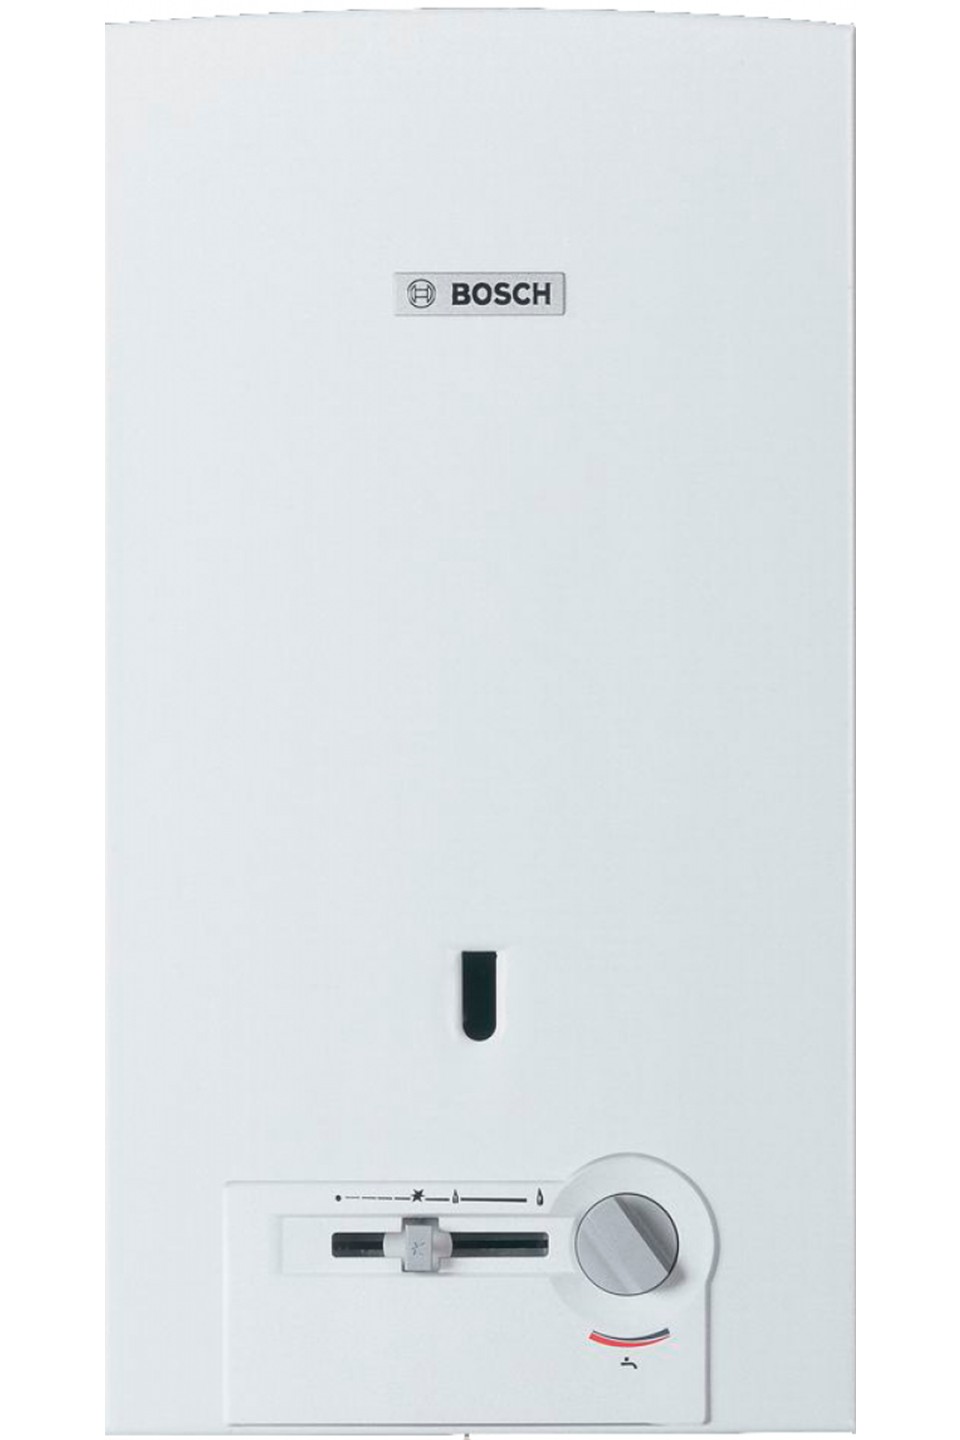 Ціна колонка bosch газова Bosch Therm 4000 O WR 10-2 P (7701331615) в Києві